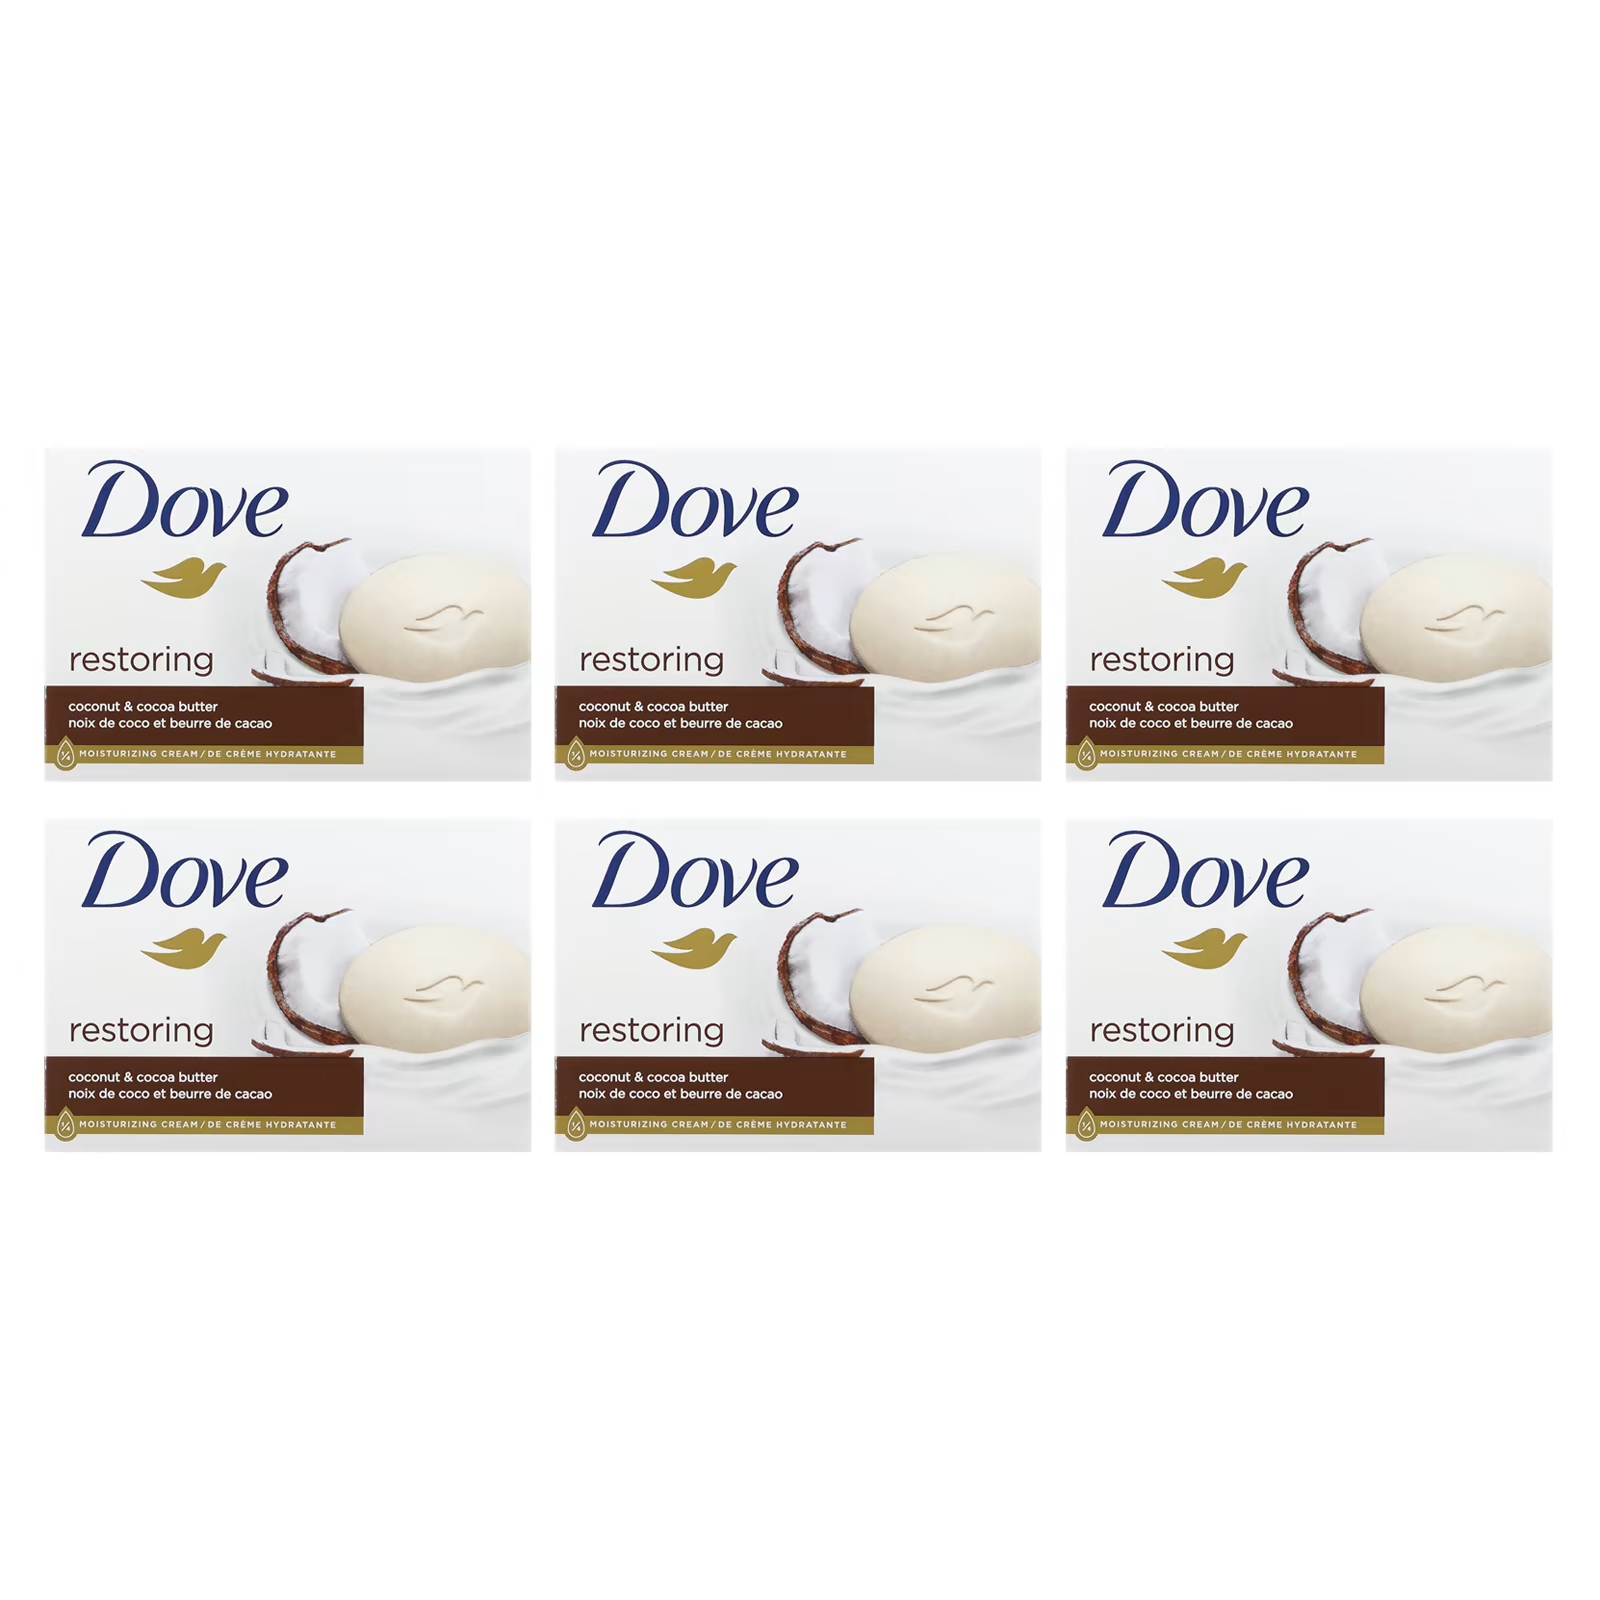 Dove Восстанавливающее кокосовое масло и масло какао, 6 батончиков по 3,75 унции (106 г) каждый dove восстанавливающее с кокосом и кокосовым маслом 6 кусков по 106 г 3 75 унции